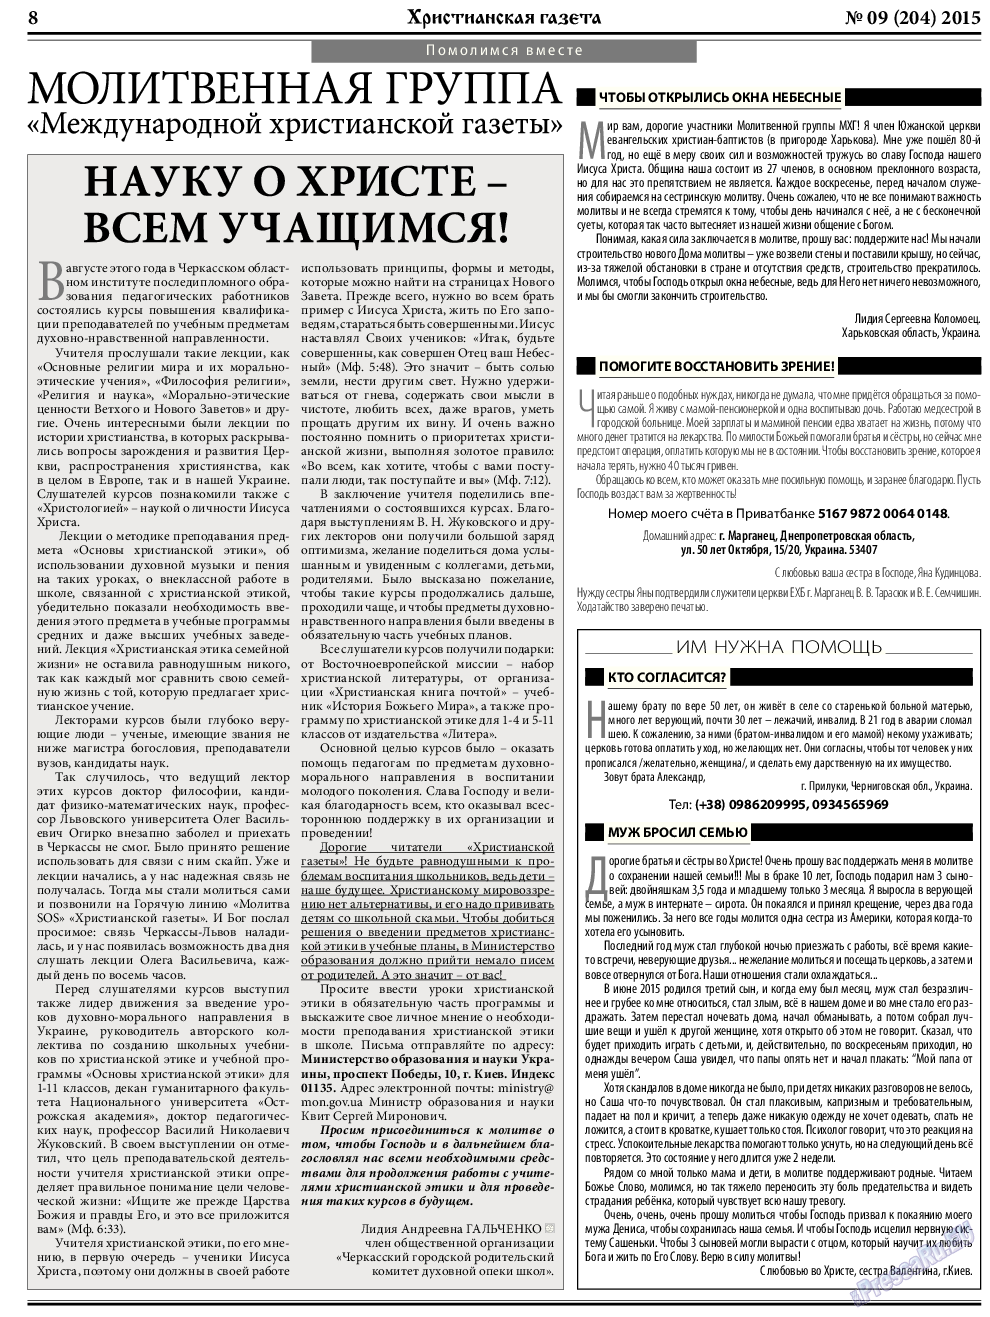 Христианская газета, газета. 2015 №9 стр.8